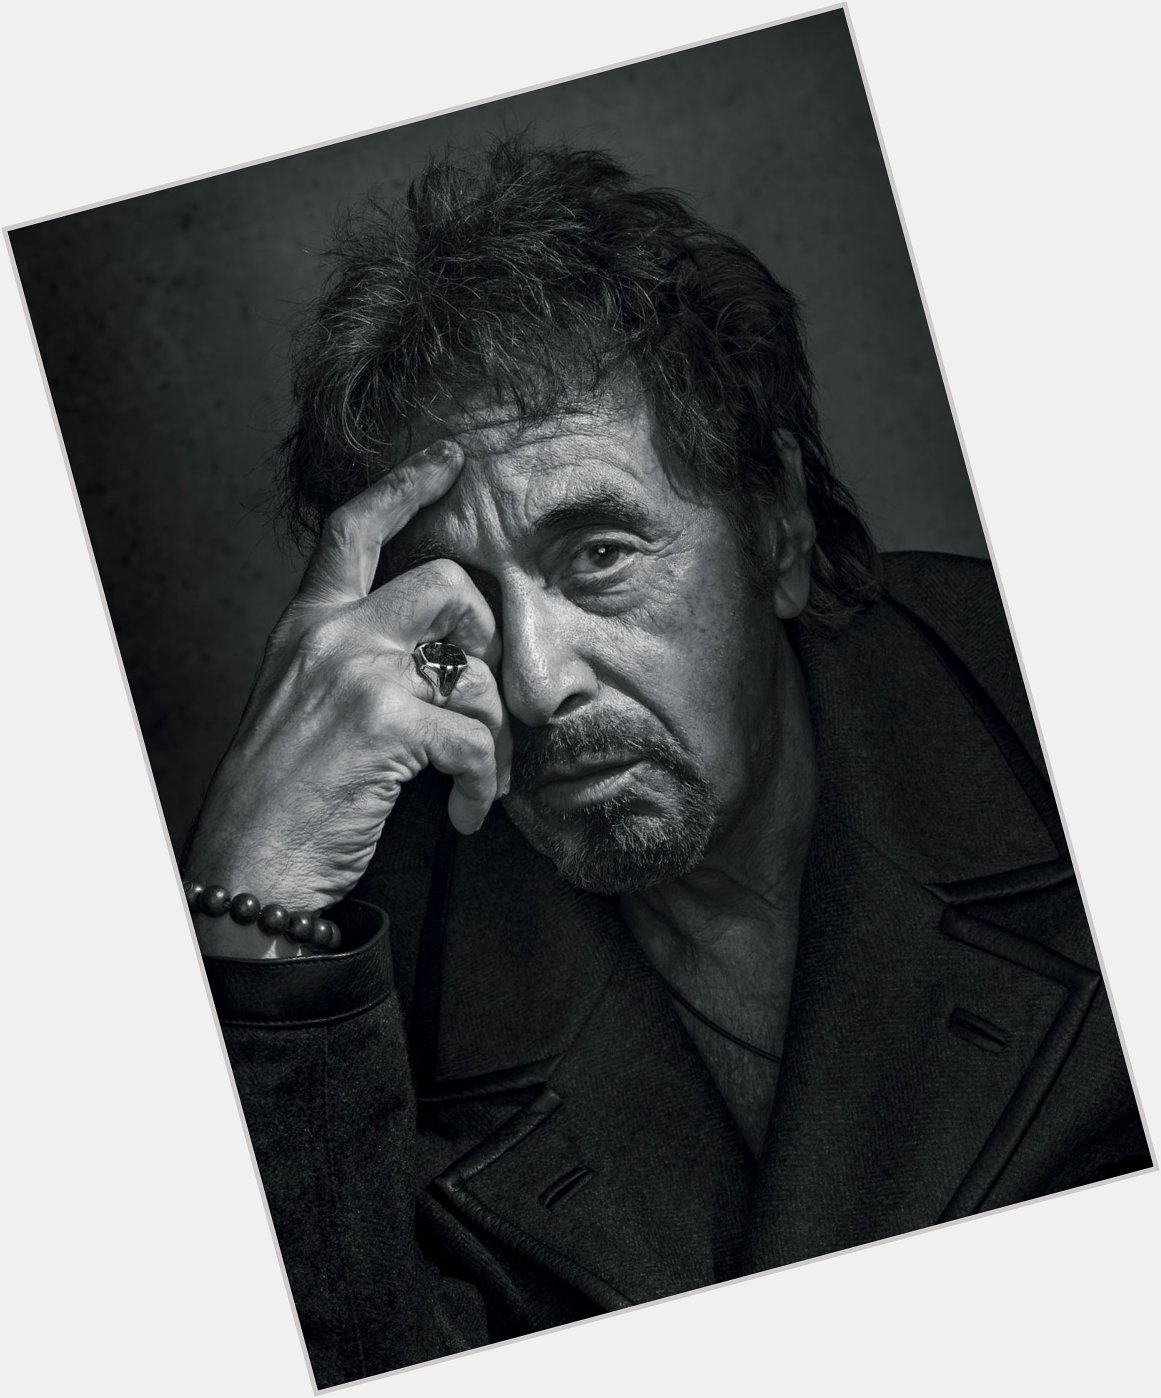 Happy Birthday Mr. Pacino

El gran mito del cine Al Pacino ha cumplido 80 años    